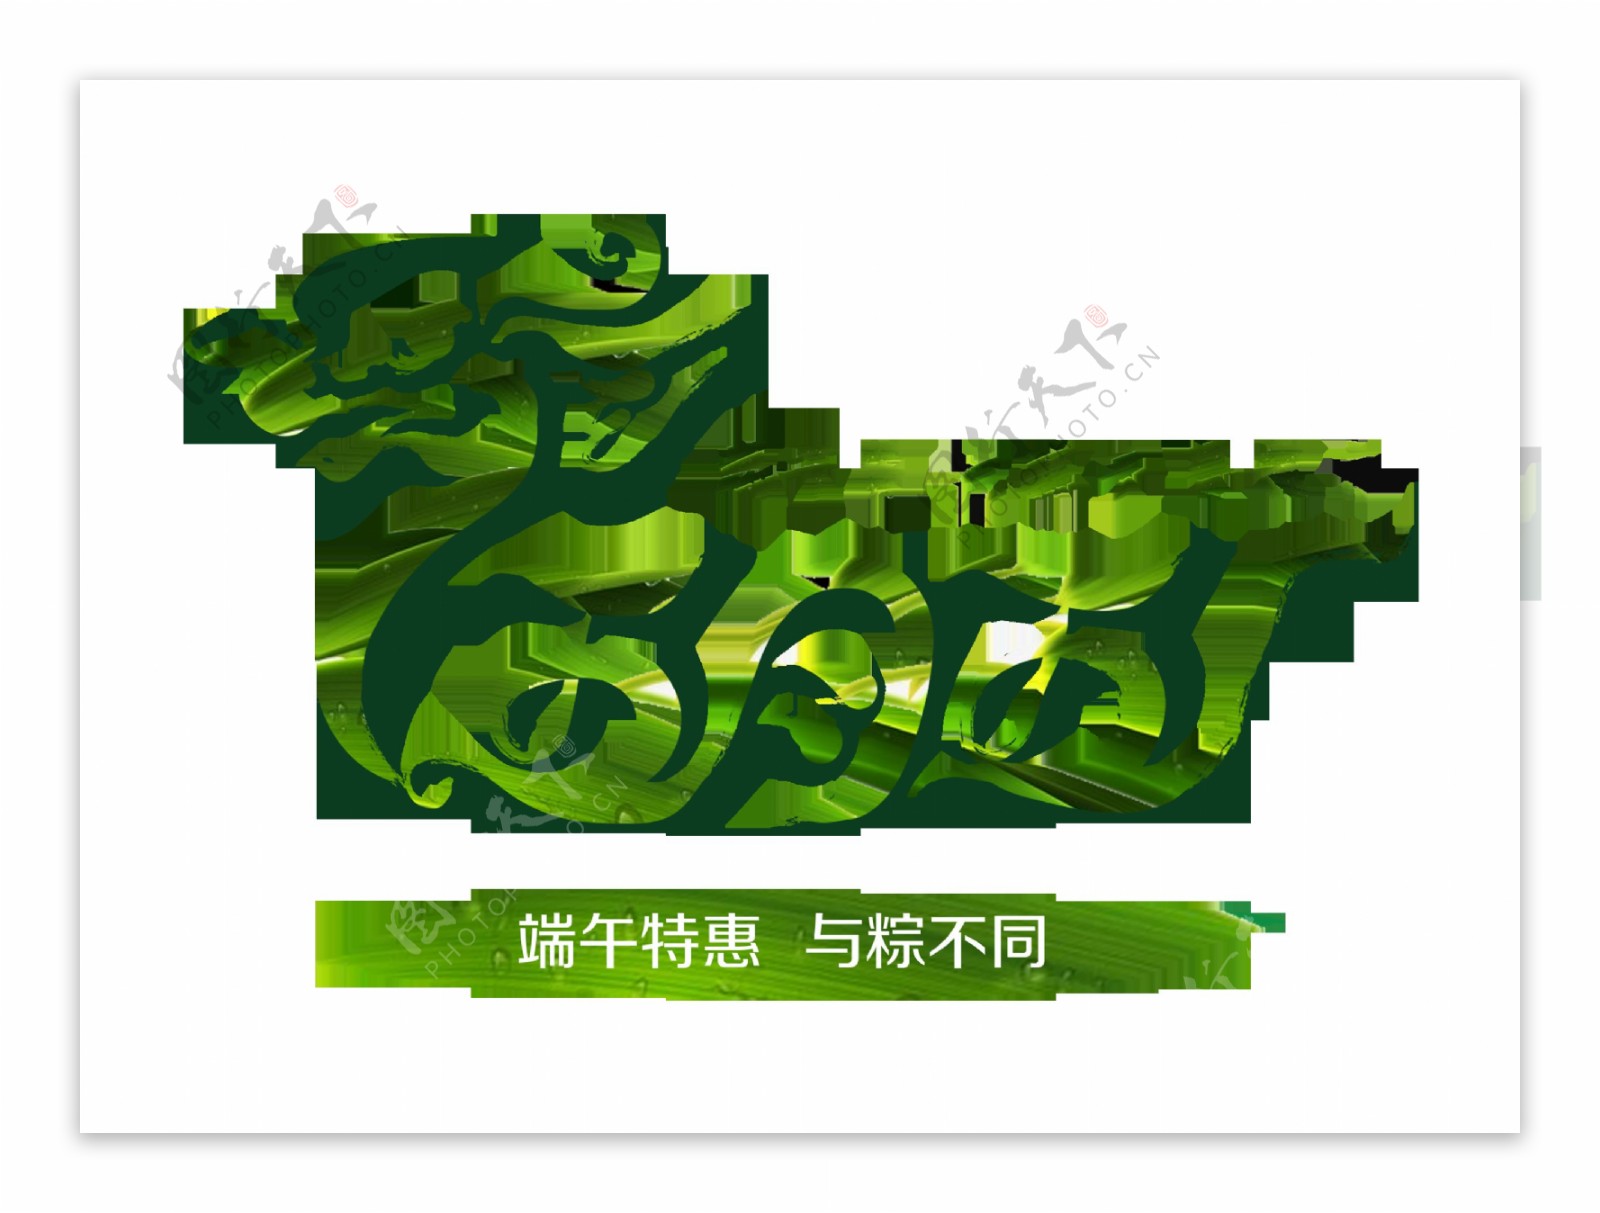 五月五端午节吃粽子赛龙舟节日字体设计